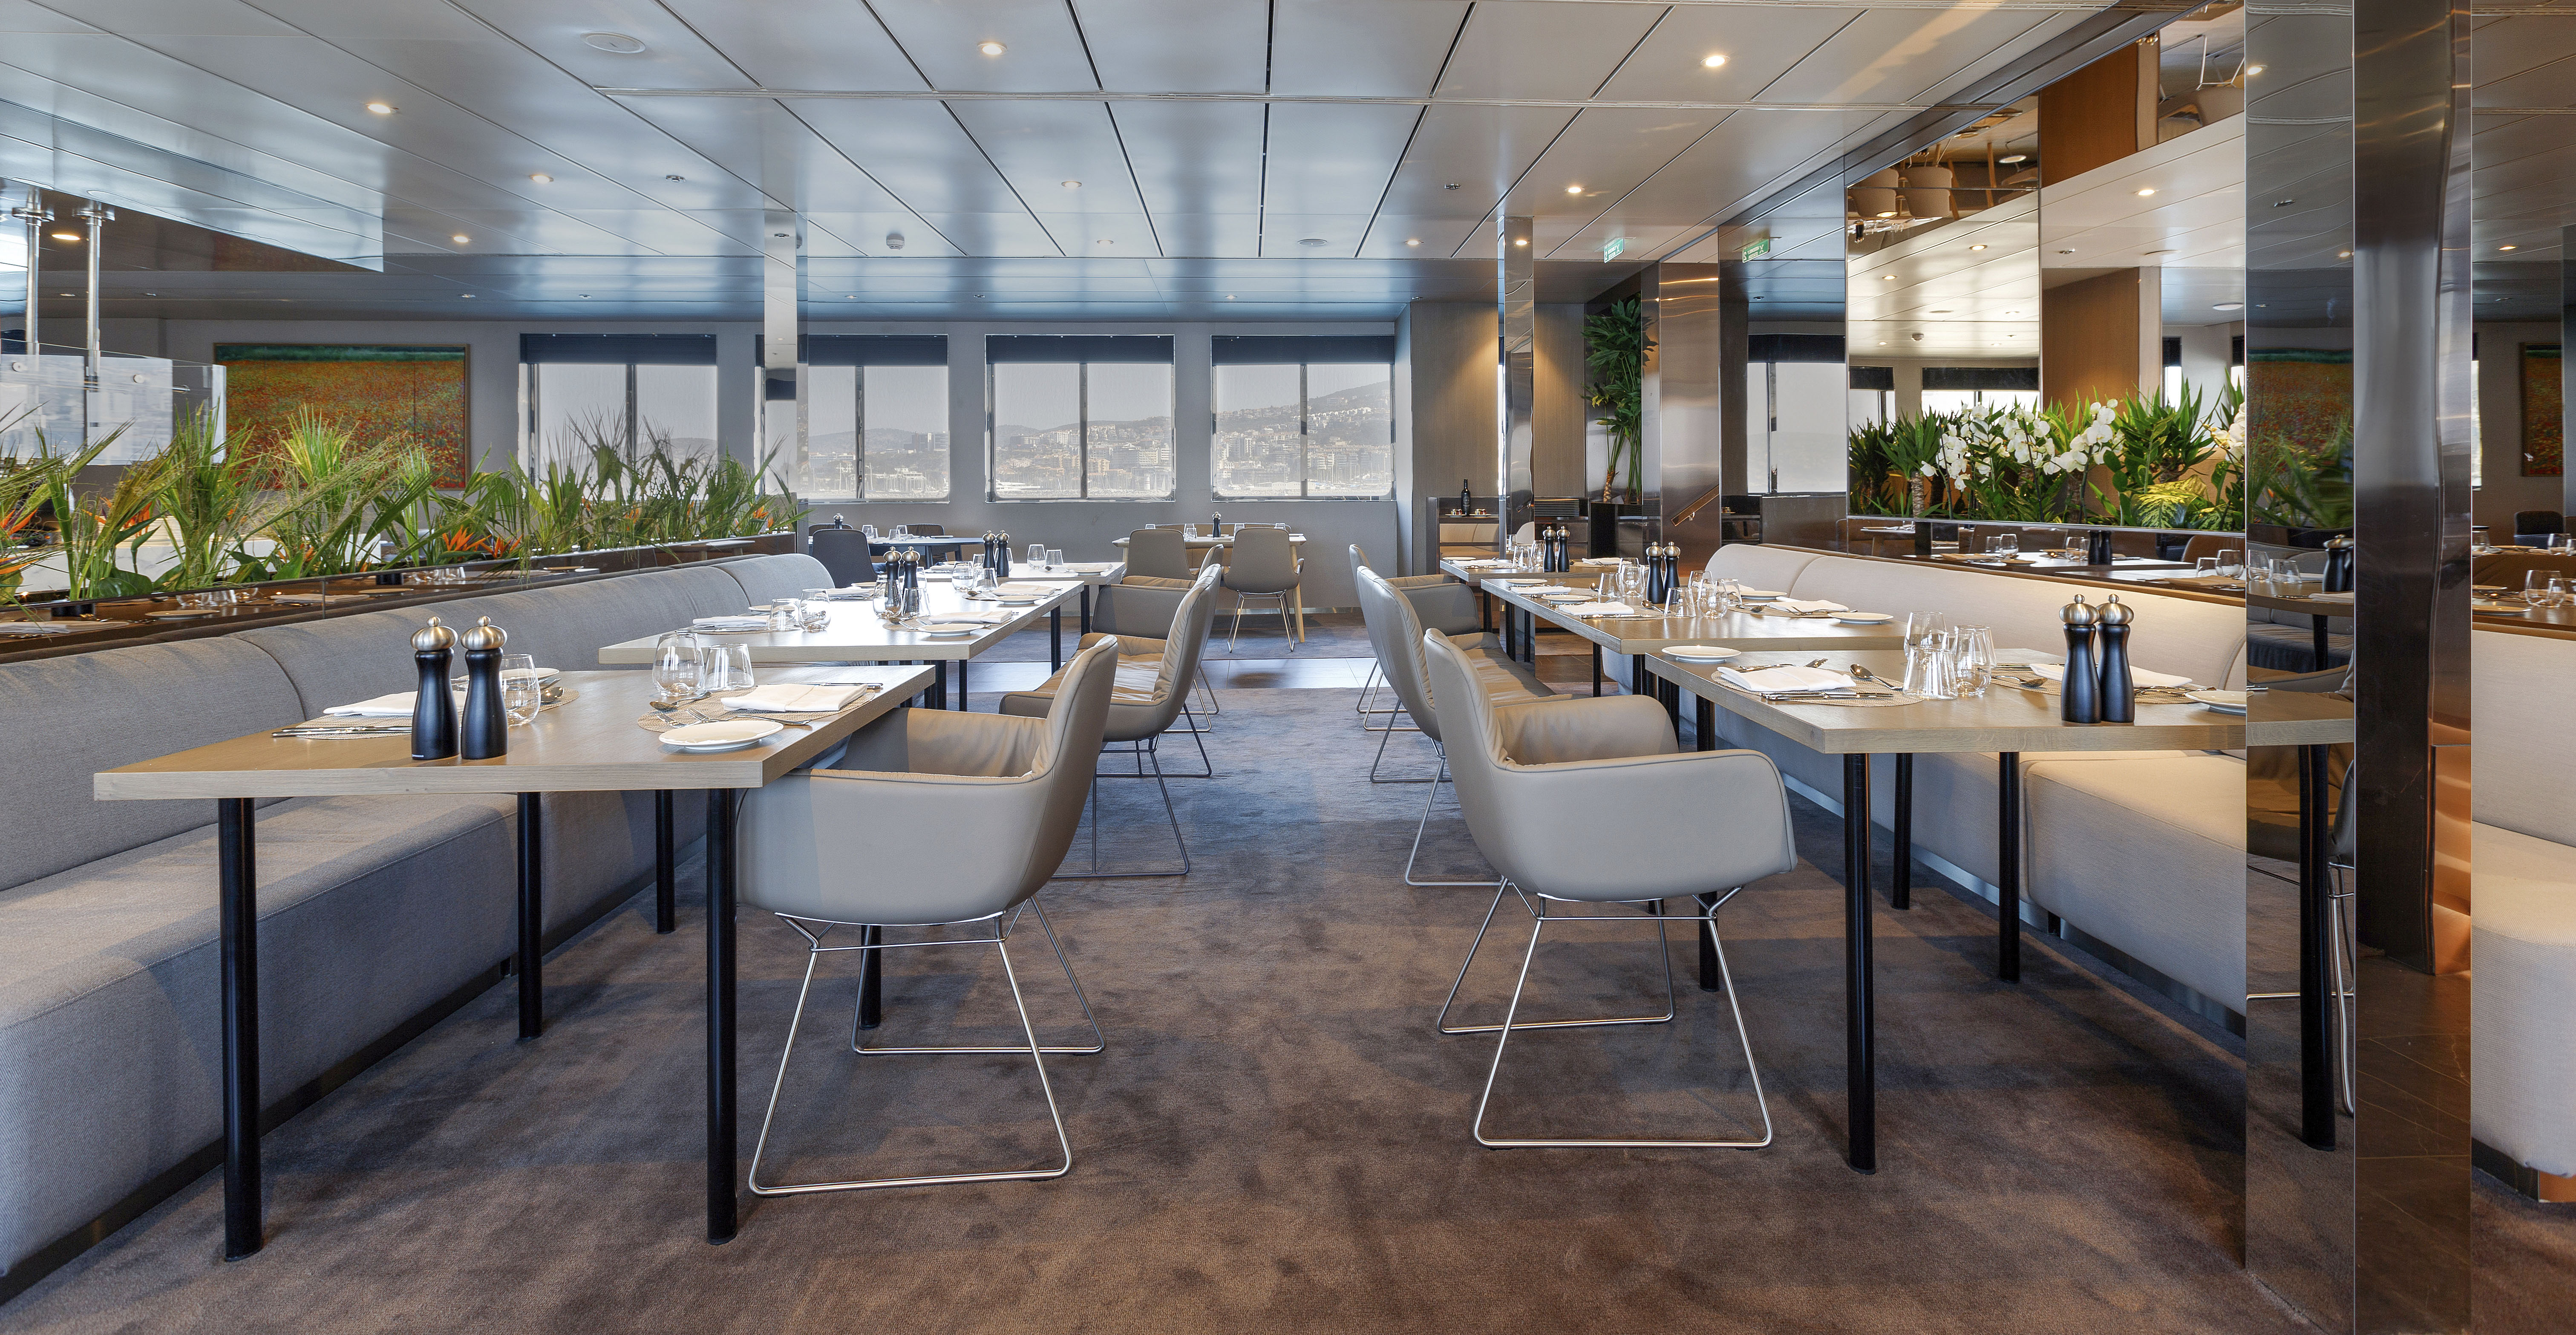 Emerald Azzurra - Restaurant La Cucina; Scenic Gruppe - Luxus-Yachtkreuzfahrten - Pressearbeit uschi liebl pr